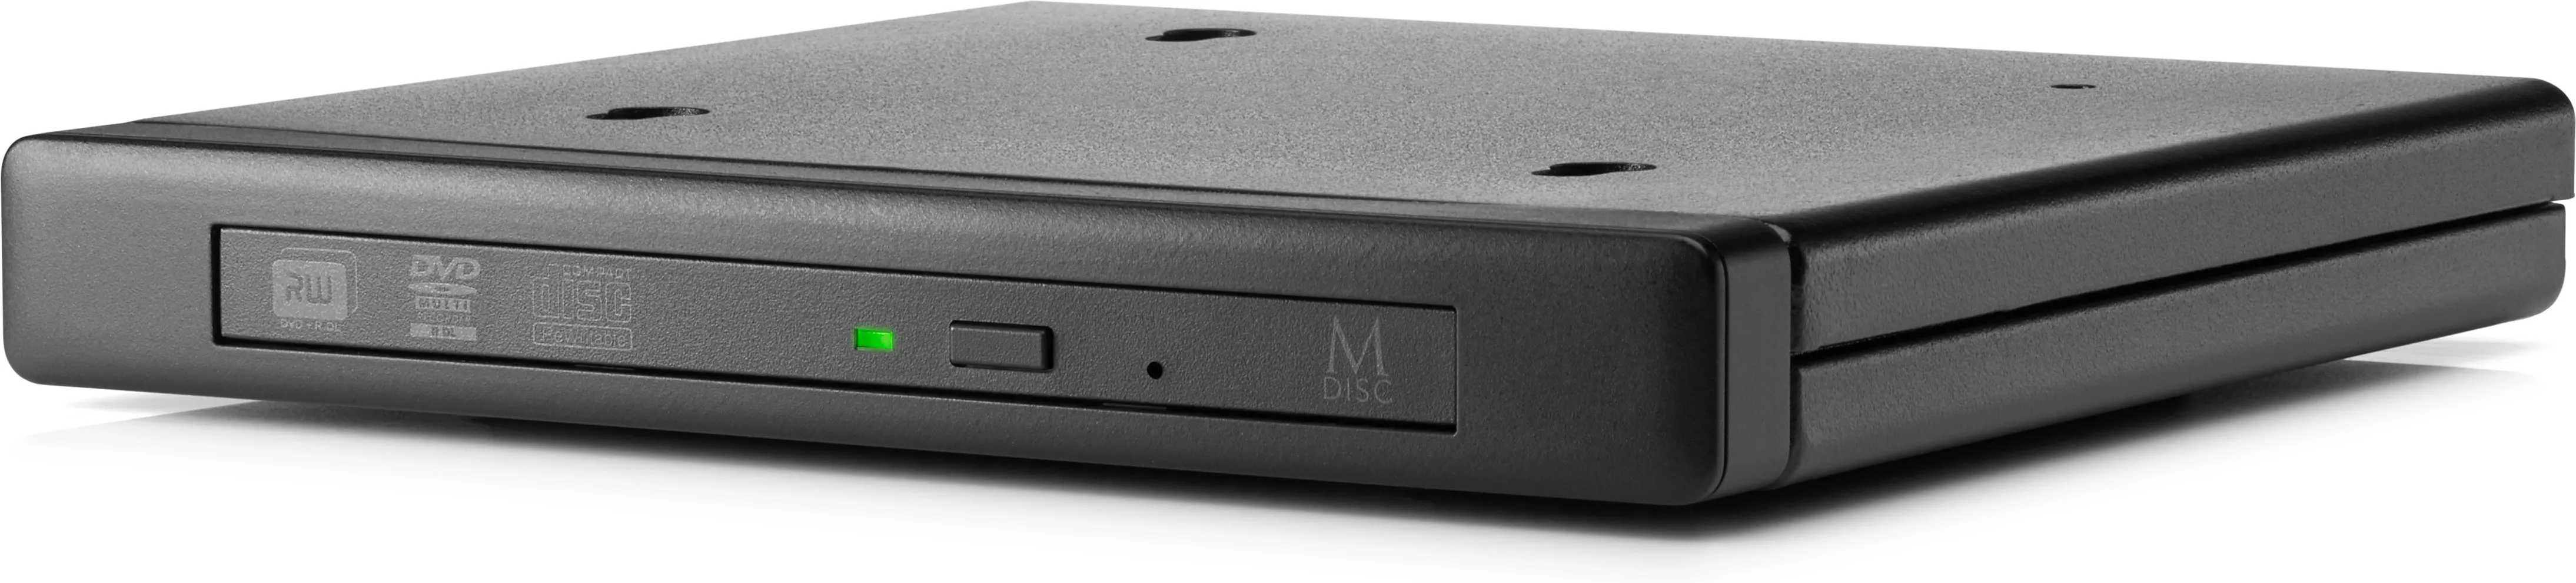 Achat HP Desktop Mini DVD-Writer ODD Module et autres produits de la marque HP